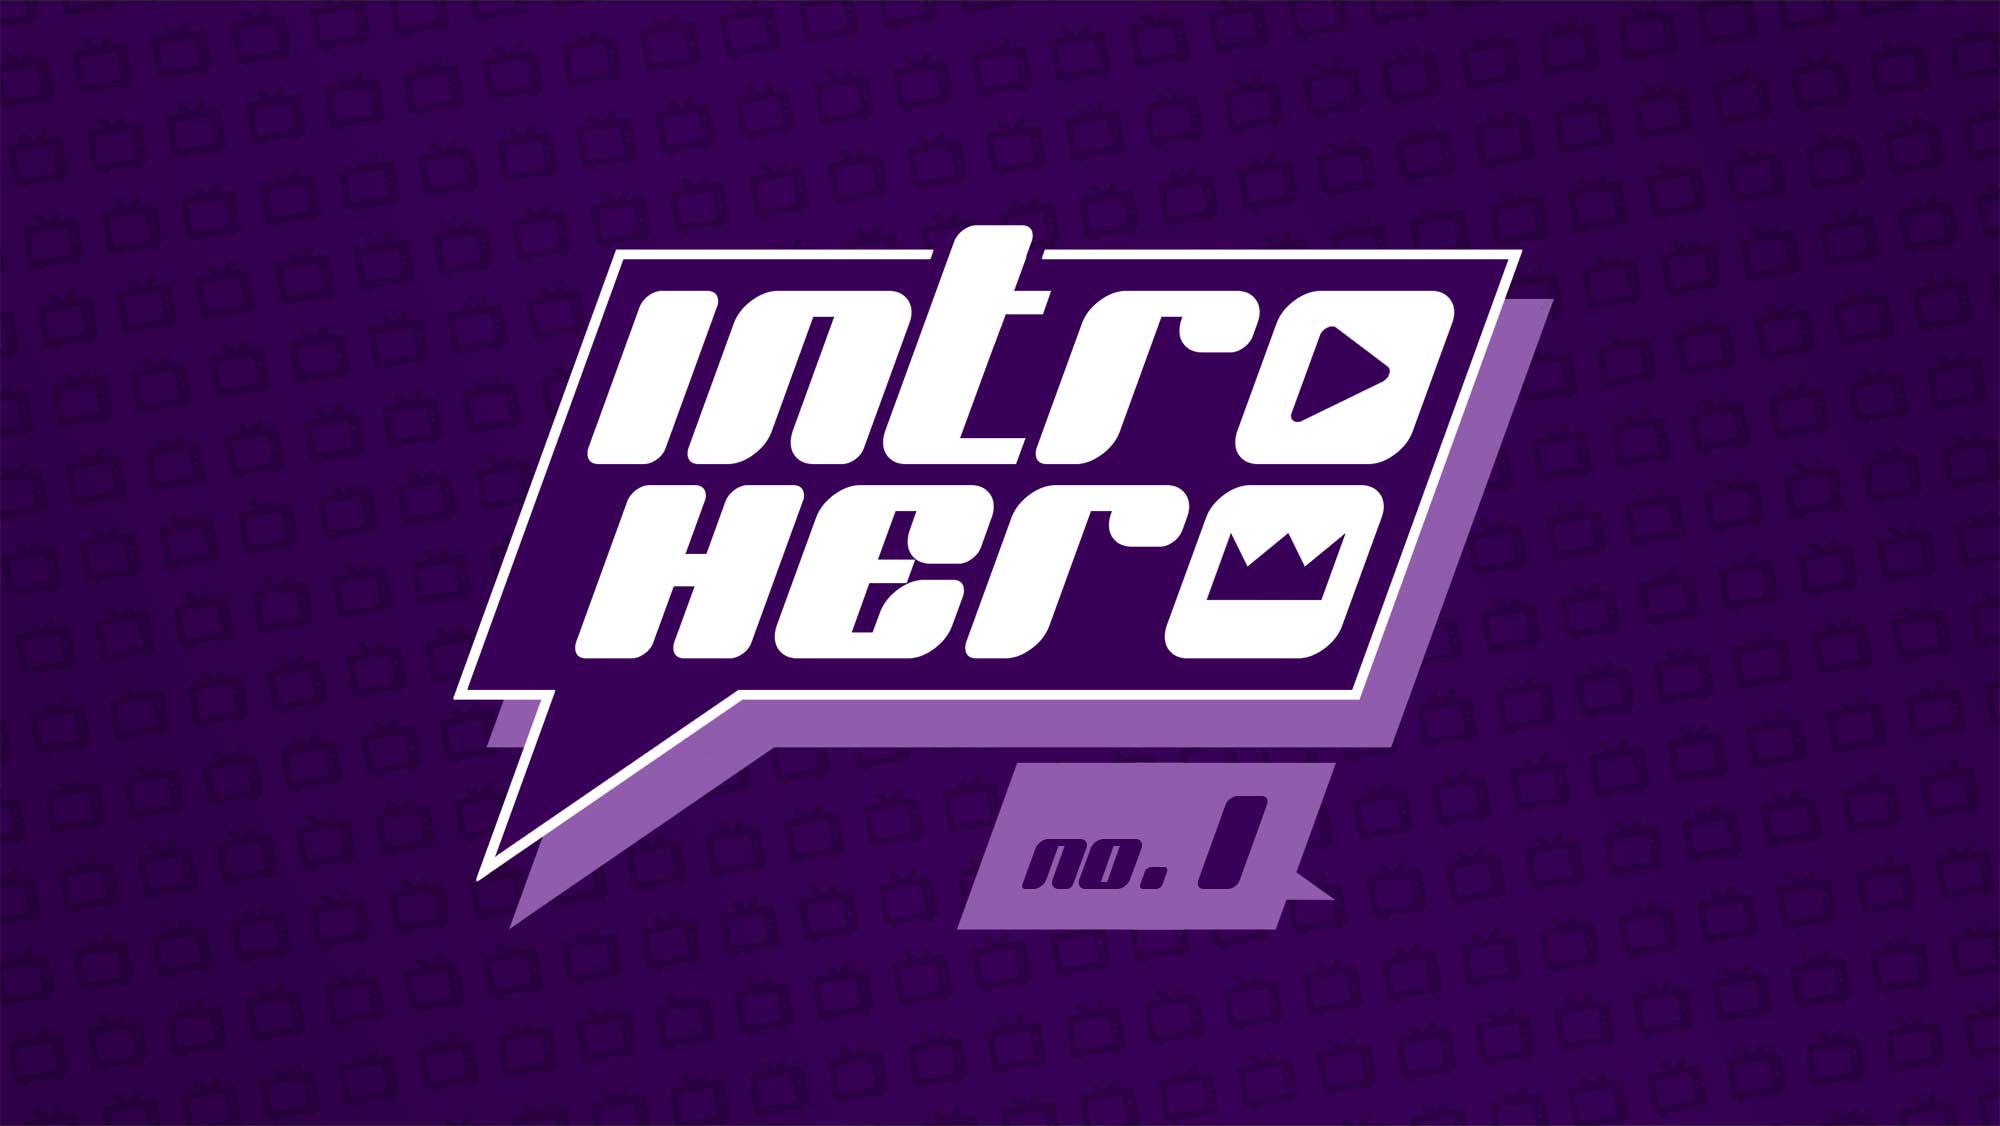 Serien-Intros in Worten beschrieben zum Mitraten: „INTRO HERO“